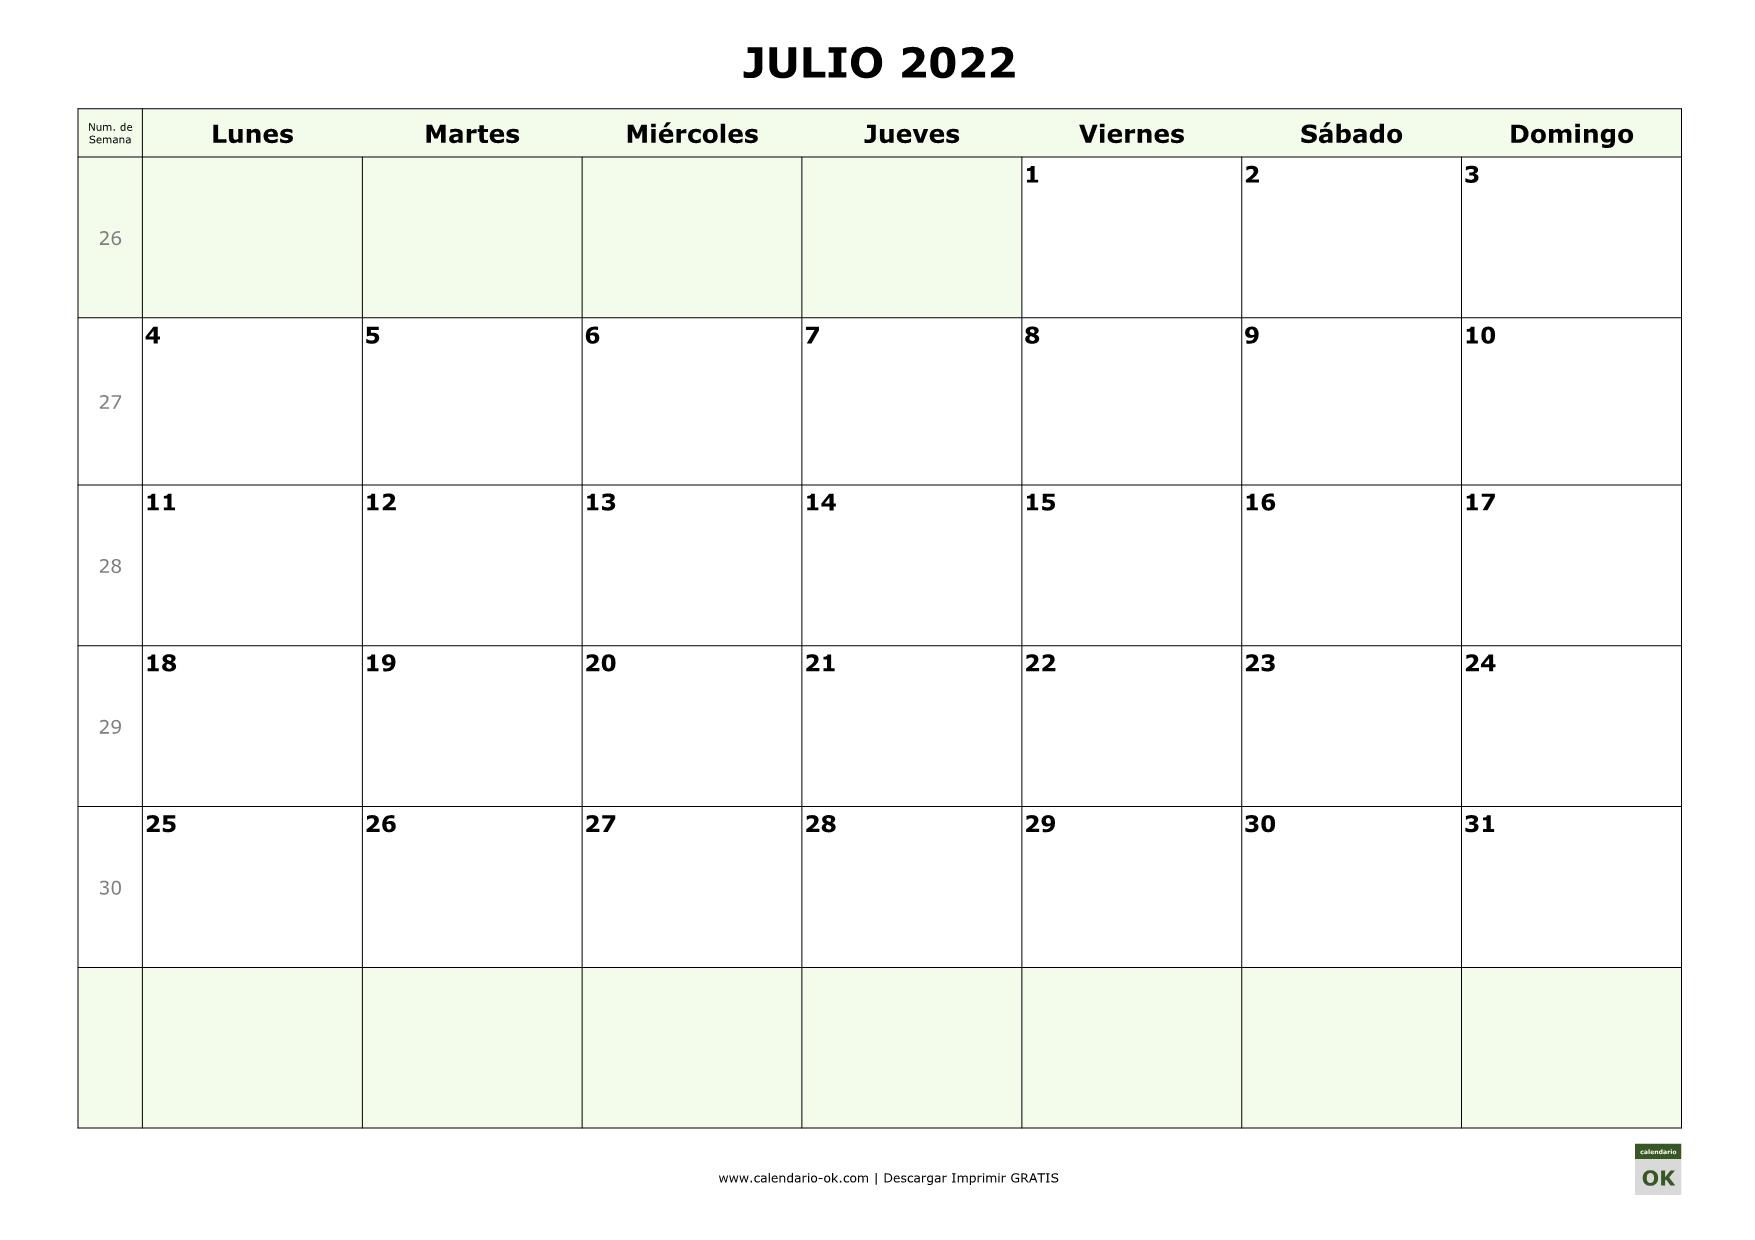 JULIO 2022 con Numero de Semana